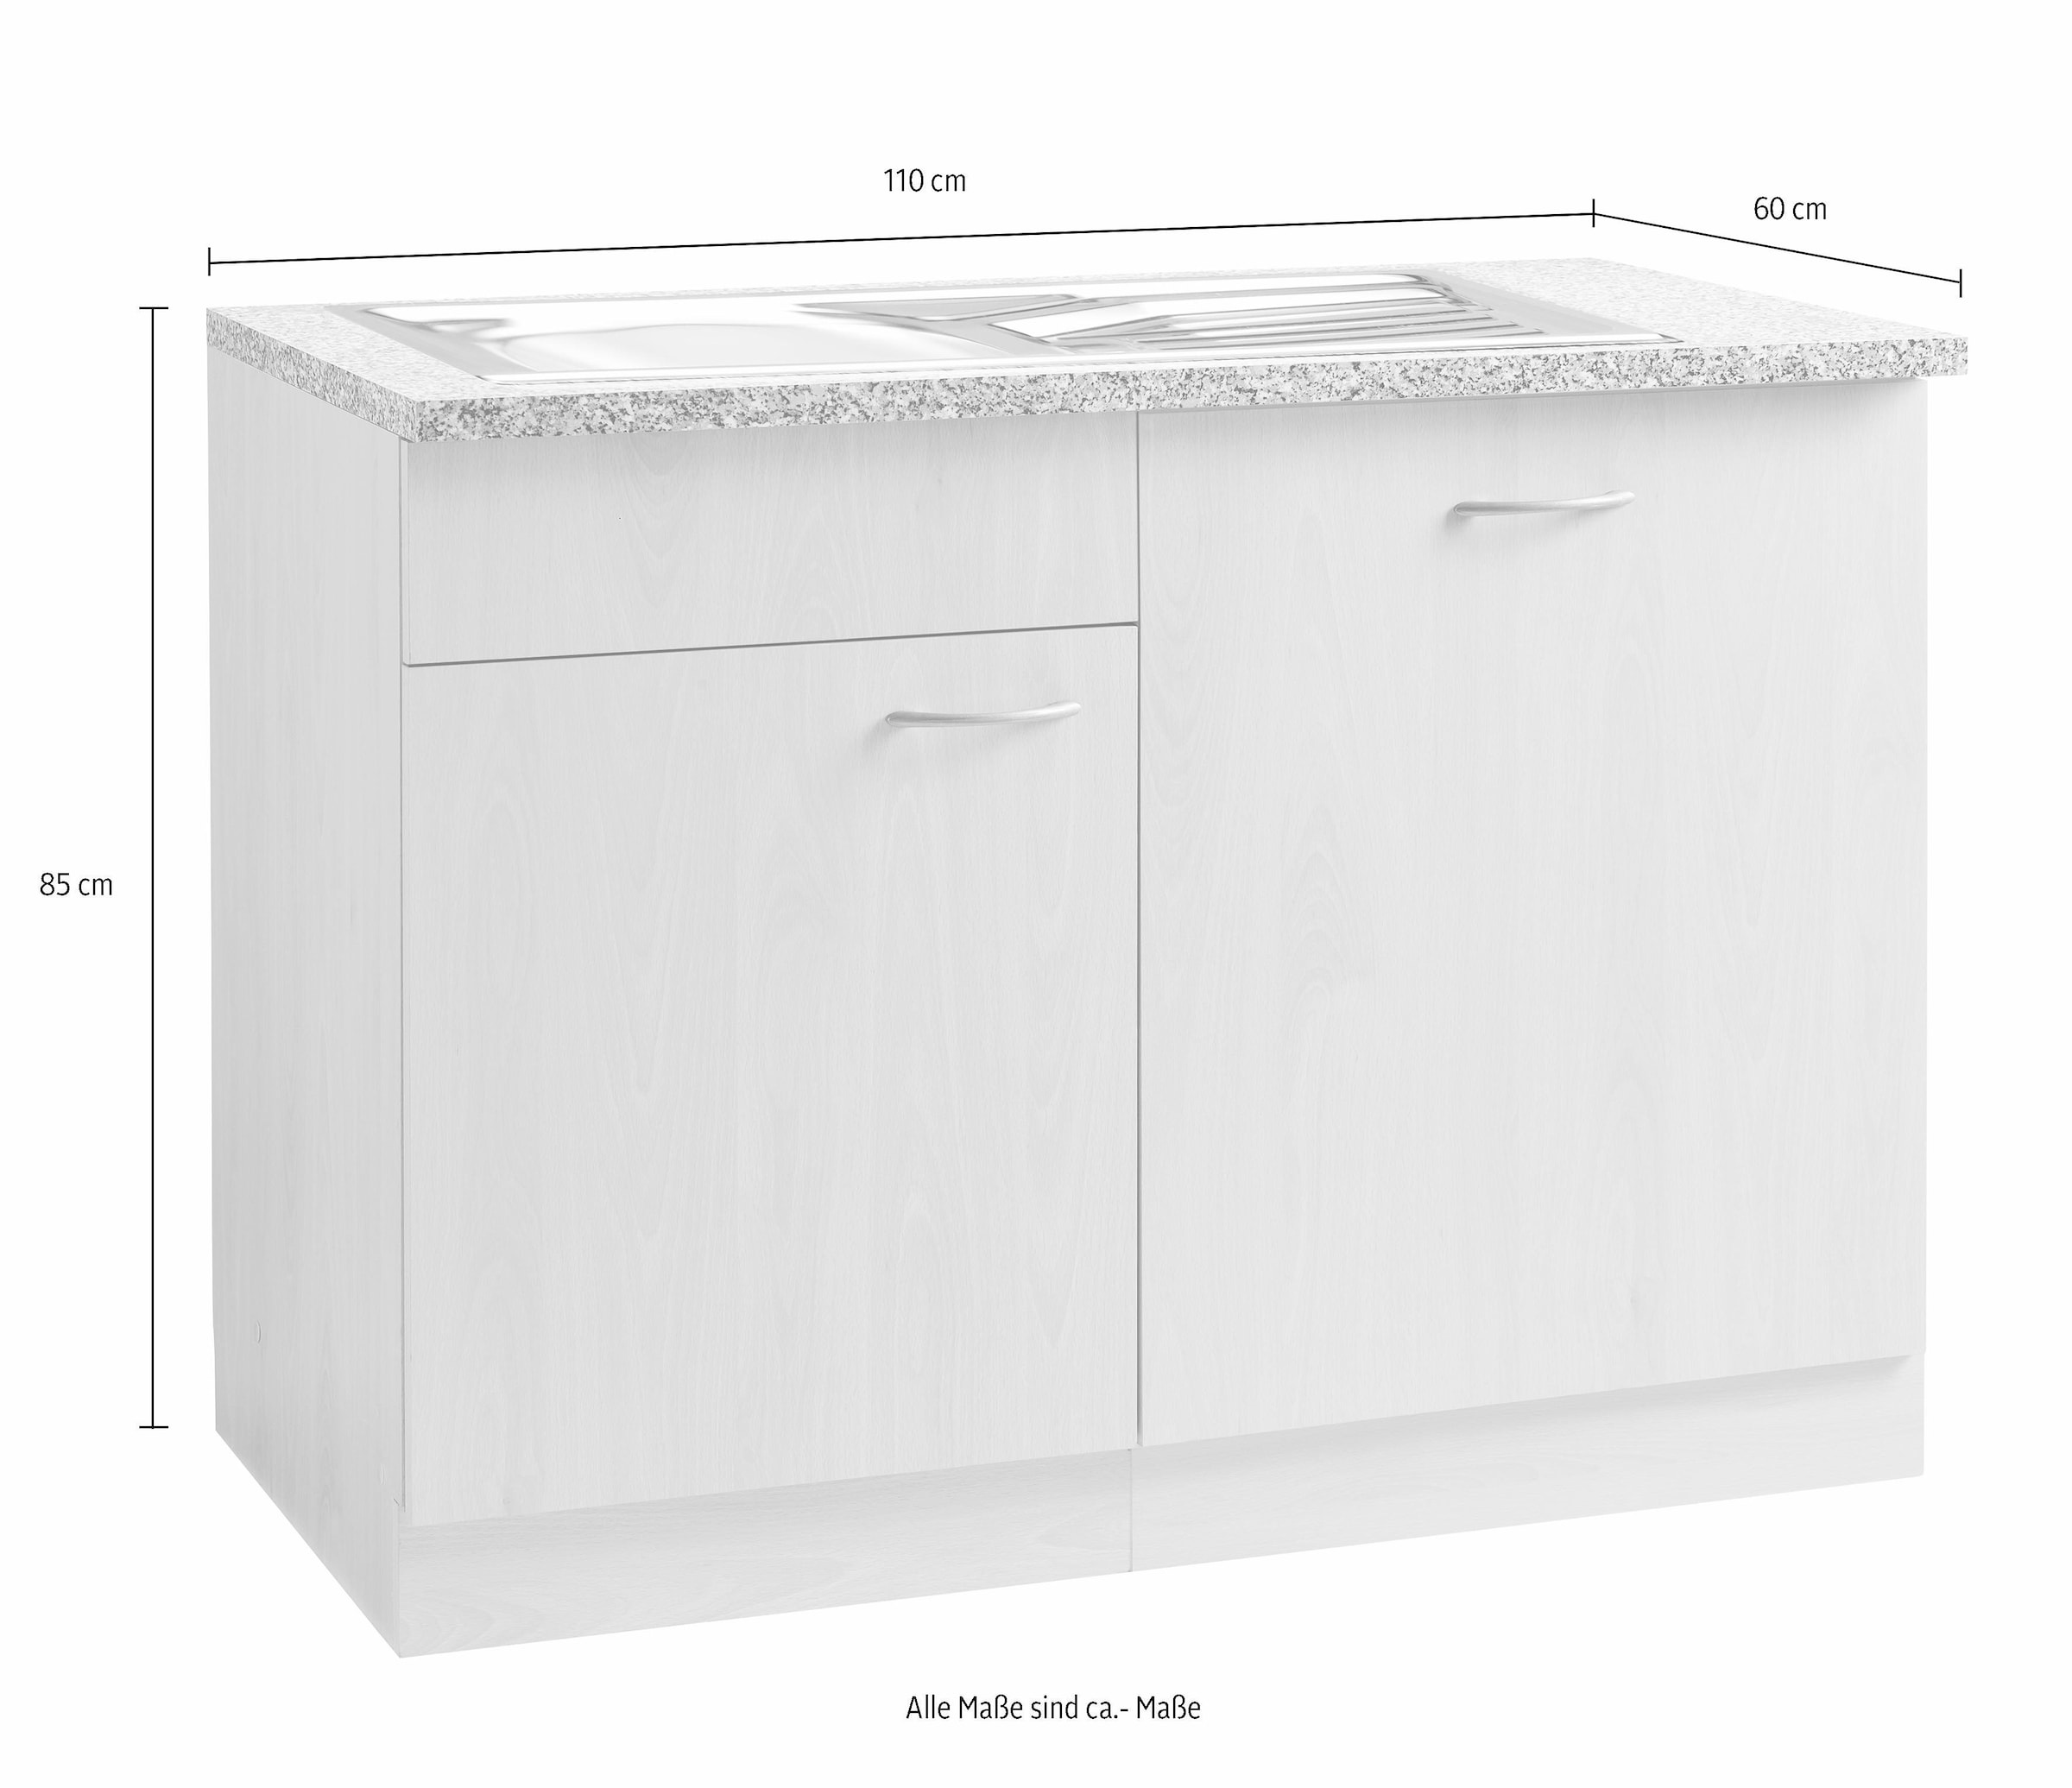 wiho Küchen Spülenschrank »Kiel«, 110 cm breit, inkl. Tür/Griff/Sockel für Geschirrspüler